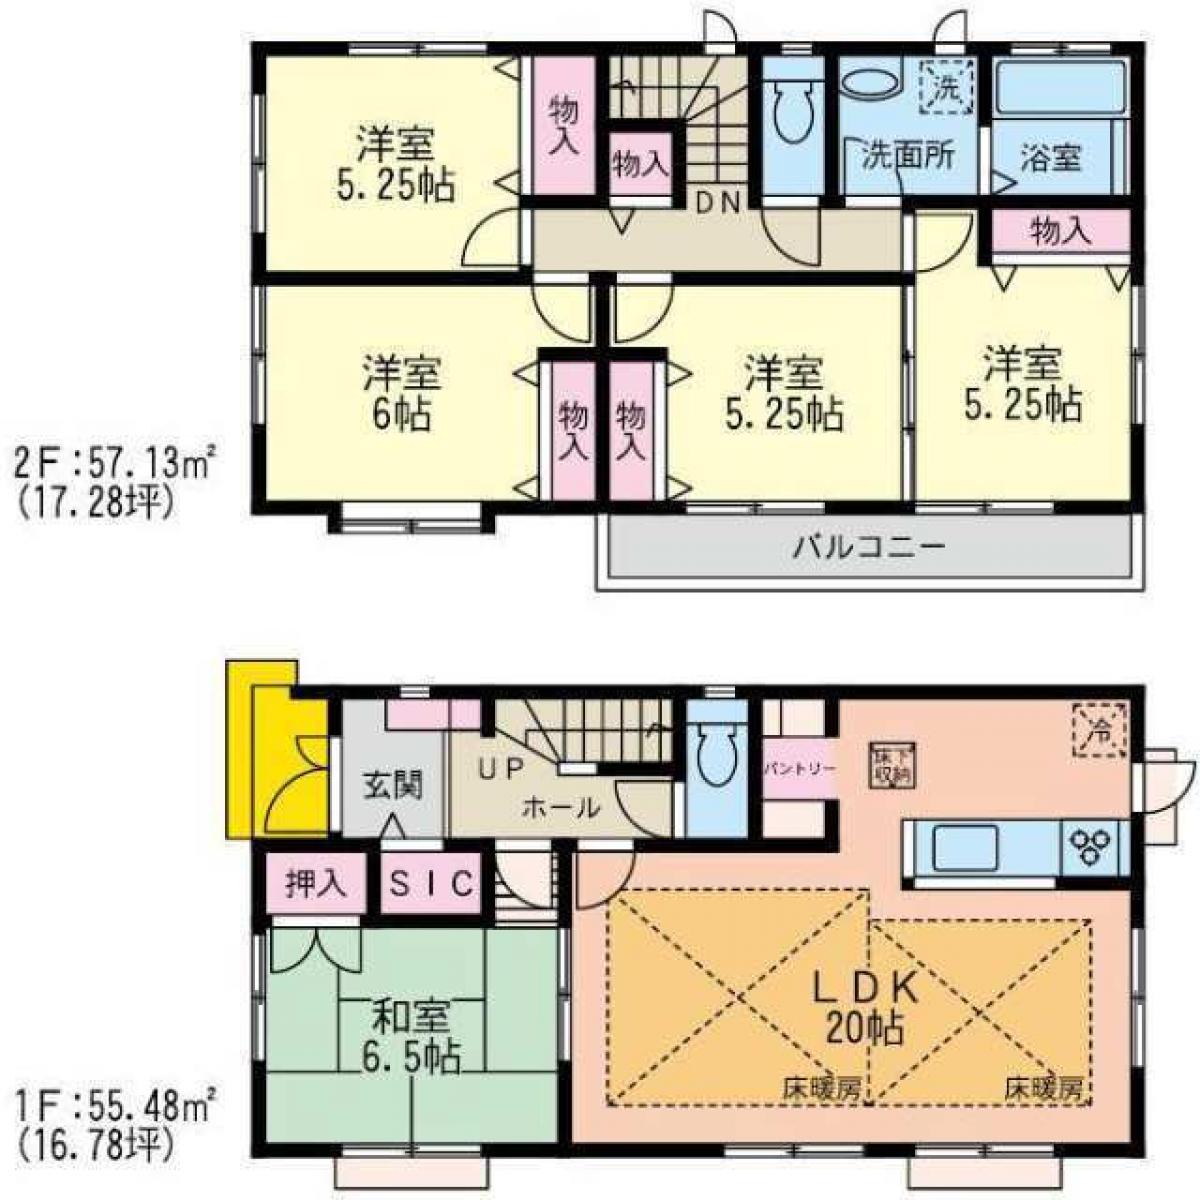 Picture of Home For Sale in Kawasaki Shi Asao Ku, Kanagawa, Japan